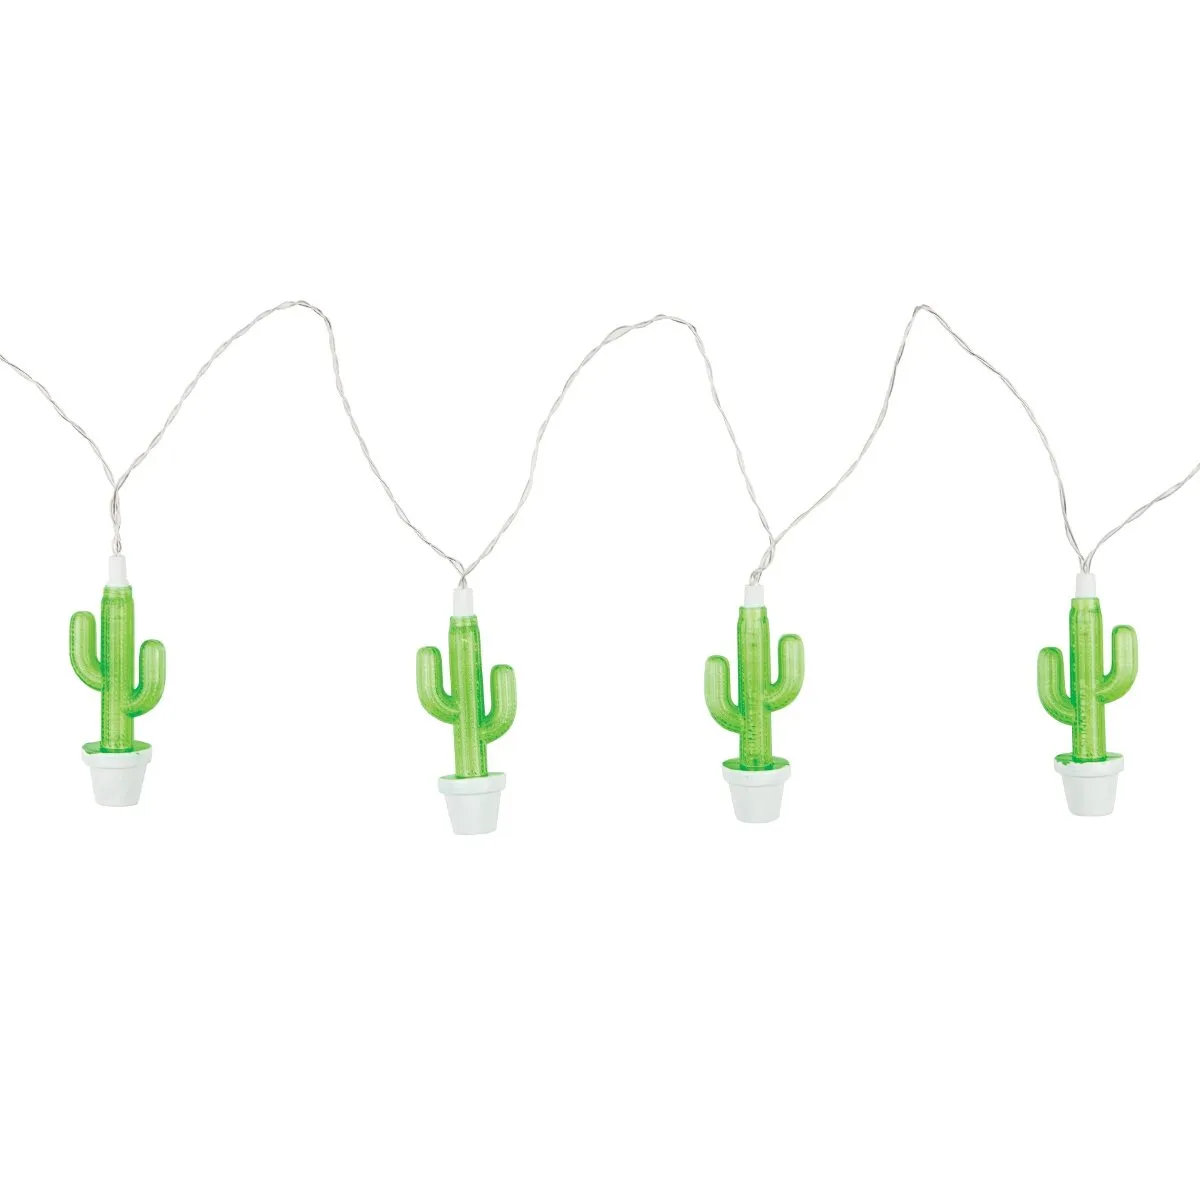 Die sommerliche Lichterkette Cactus